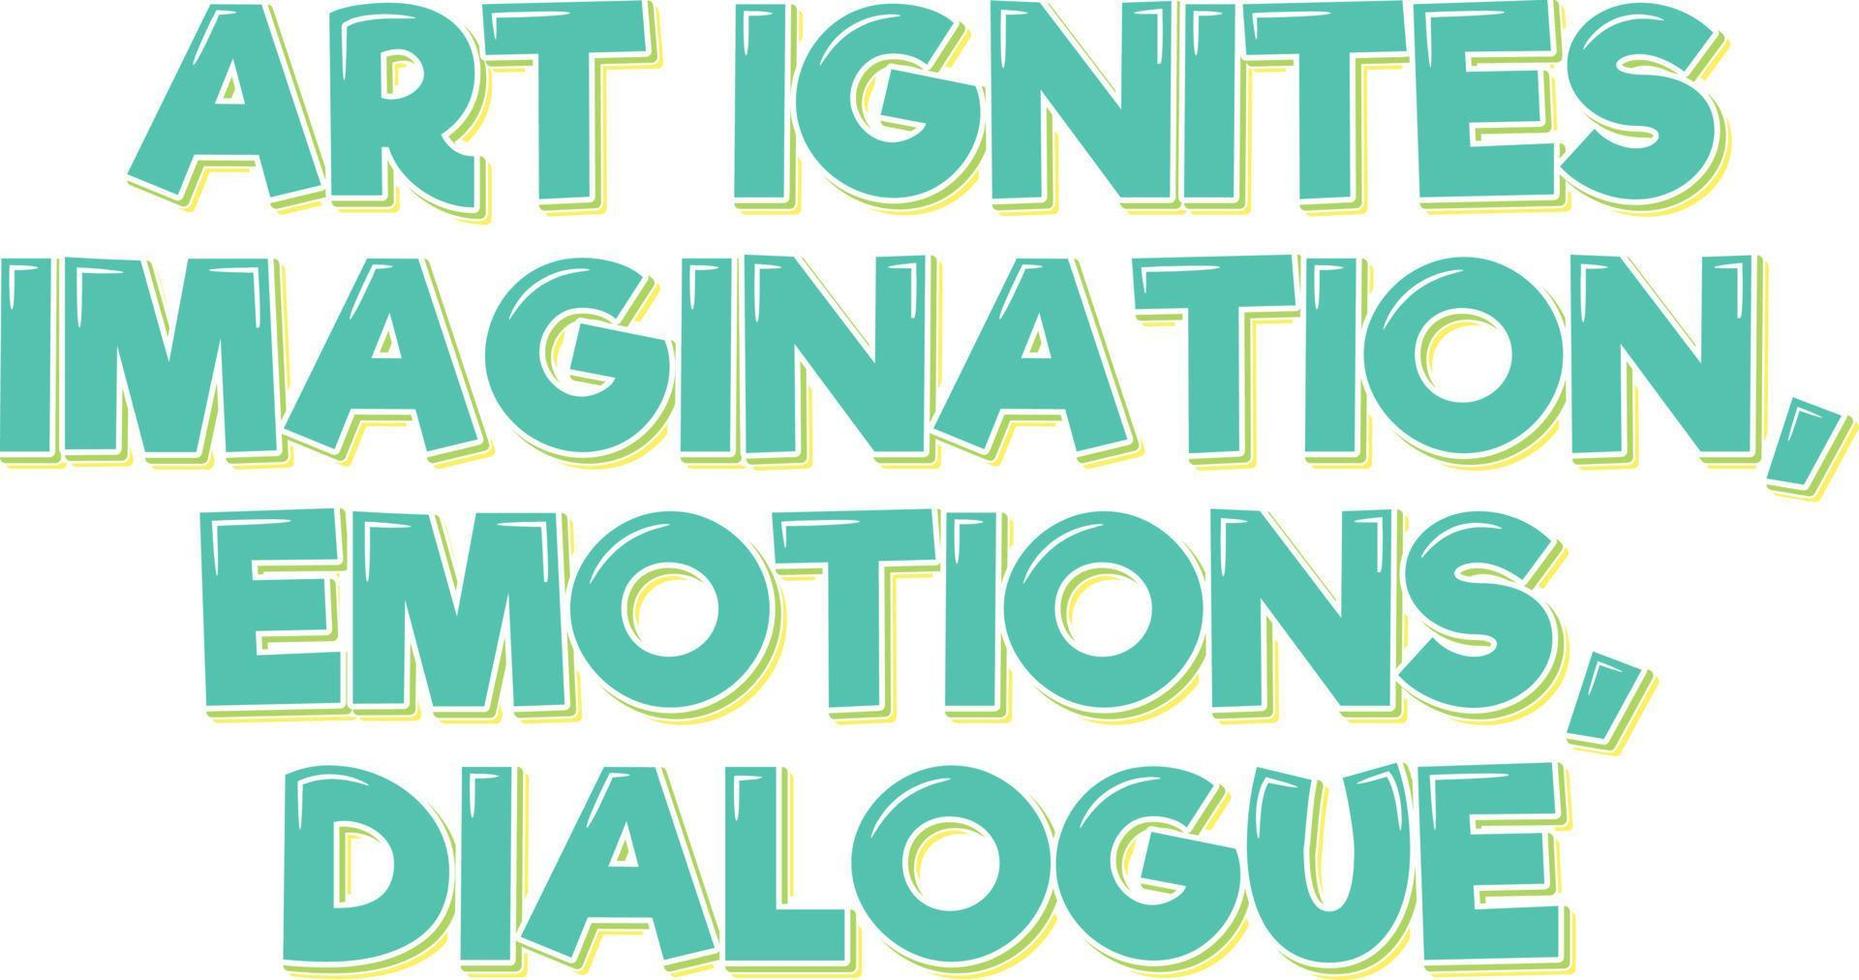 acendendo imaginação, emoções, e diálogo através arte vetor